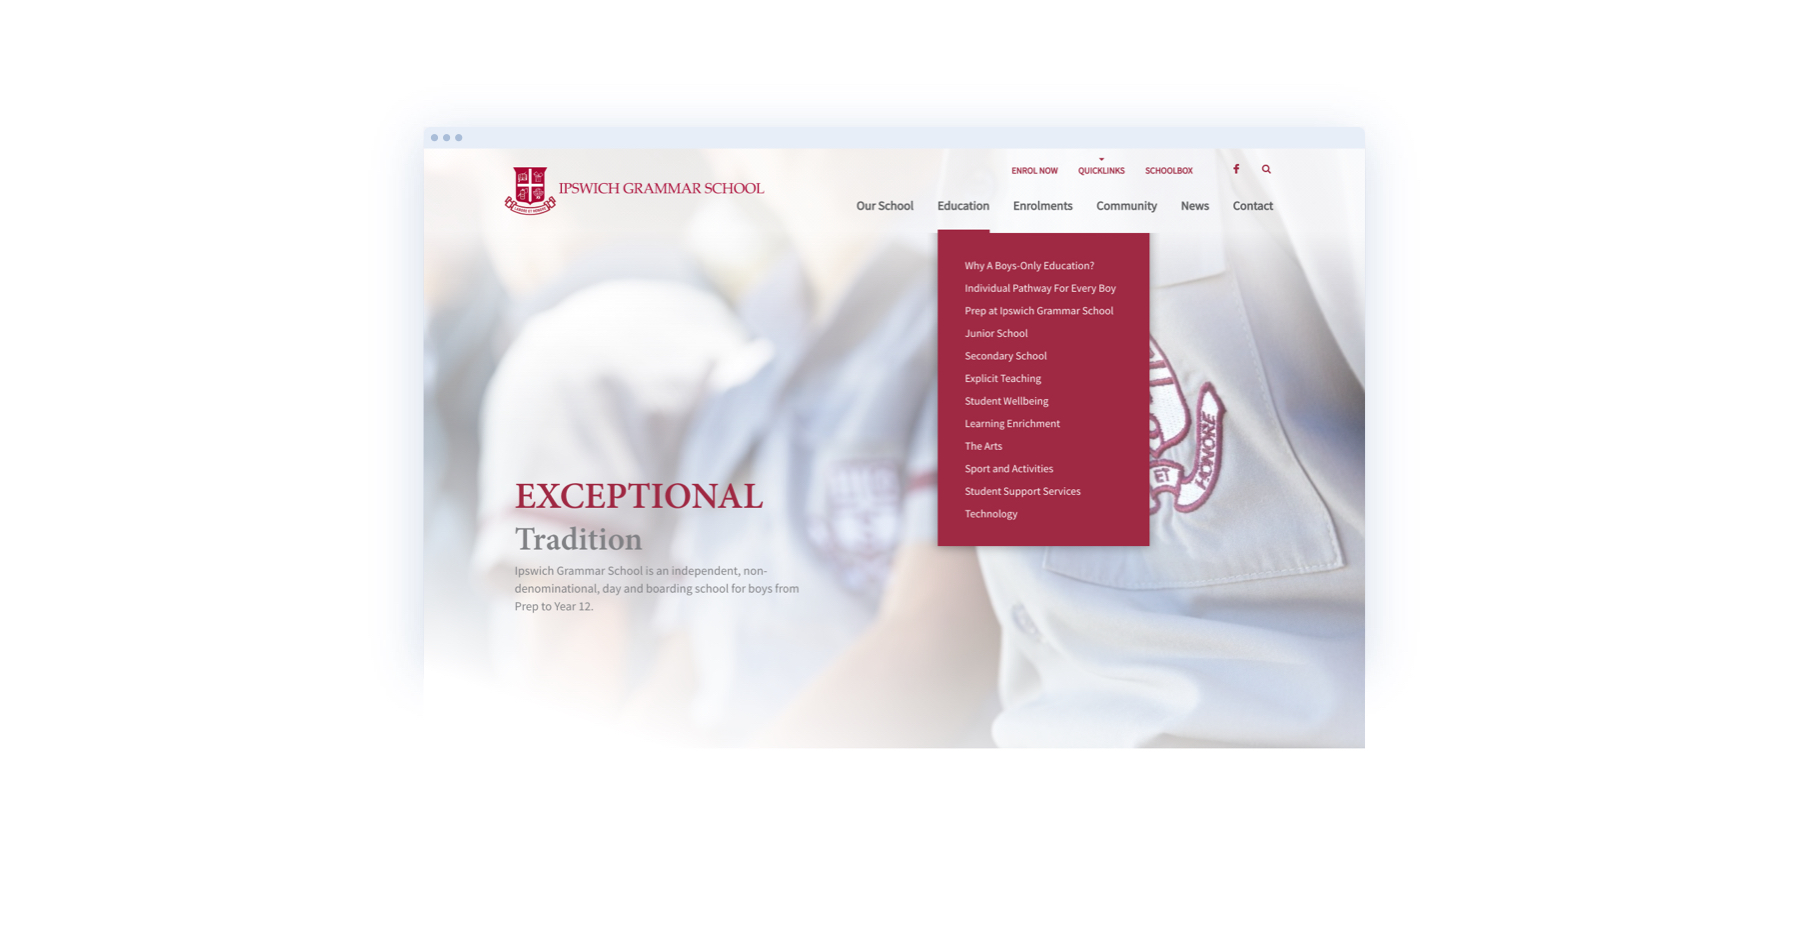 Image of Ipswich Grammar School website